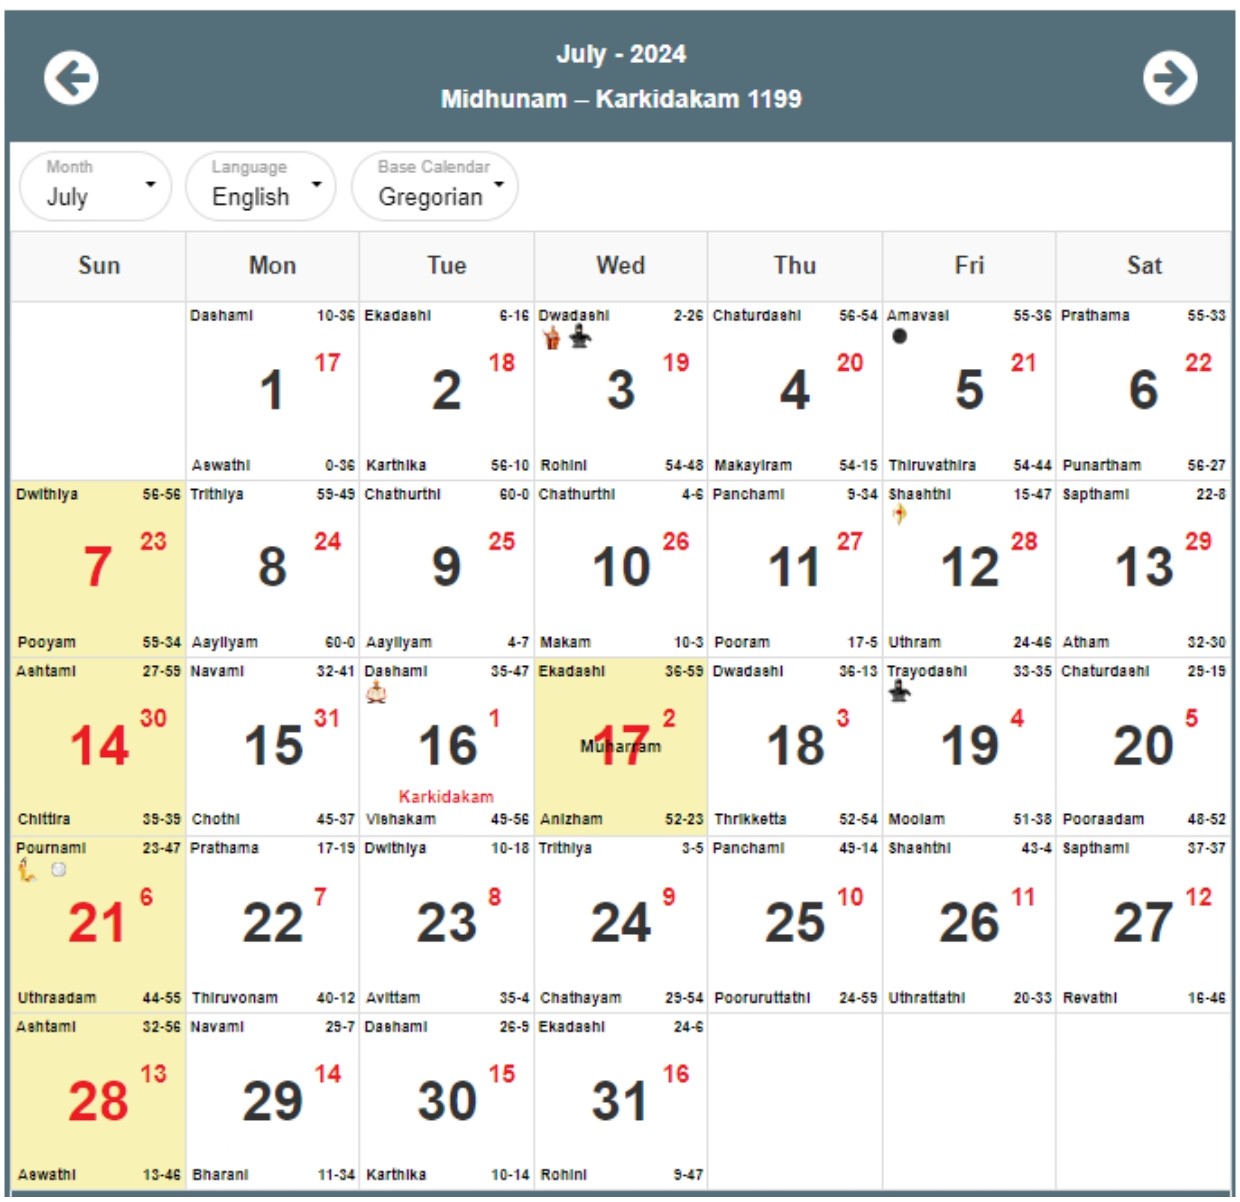 Malayalam Calendar 2024, Malayalam Panchangam 2024 with Festivals PDF